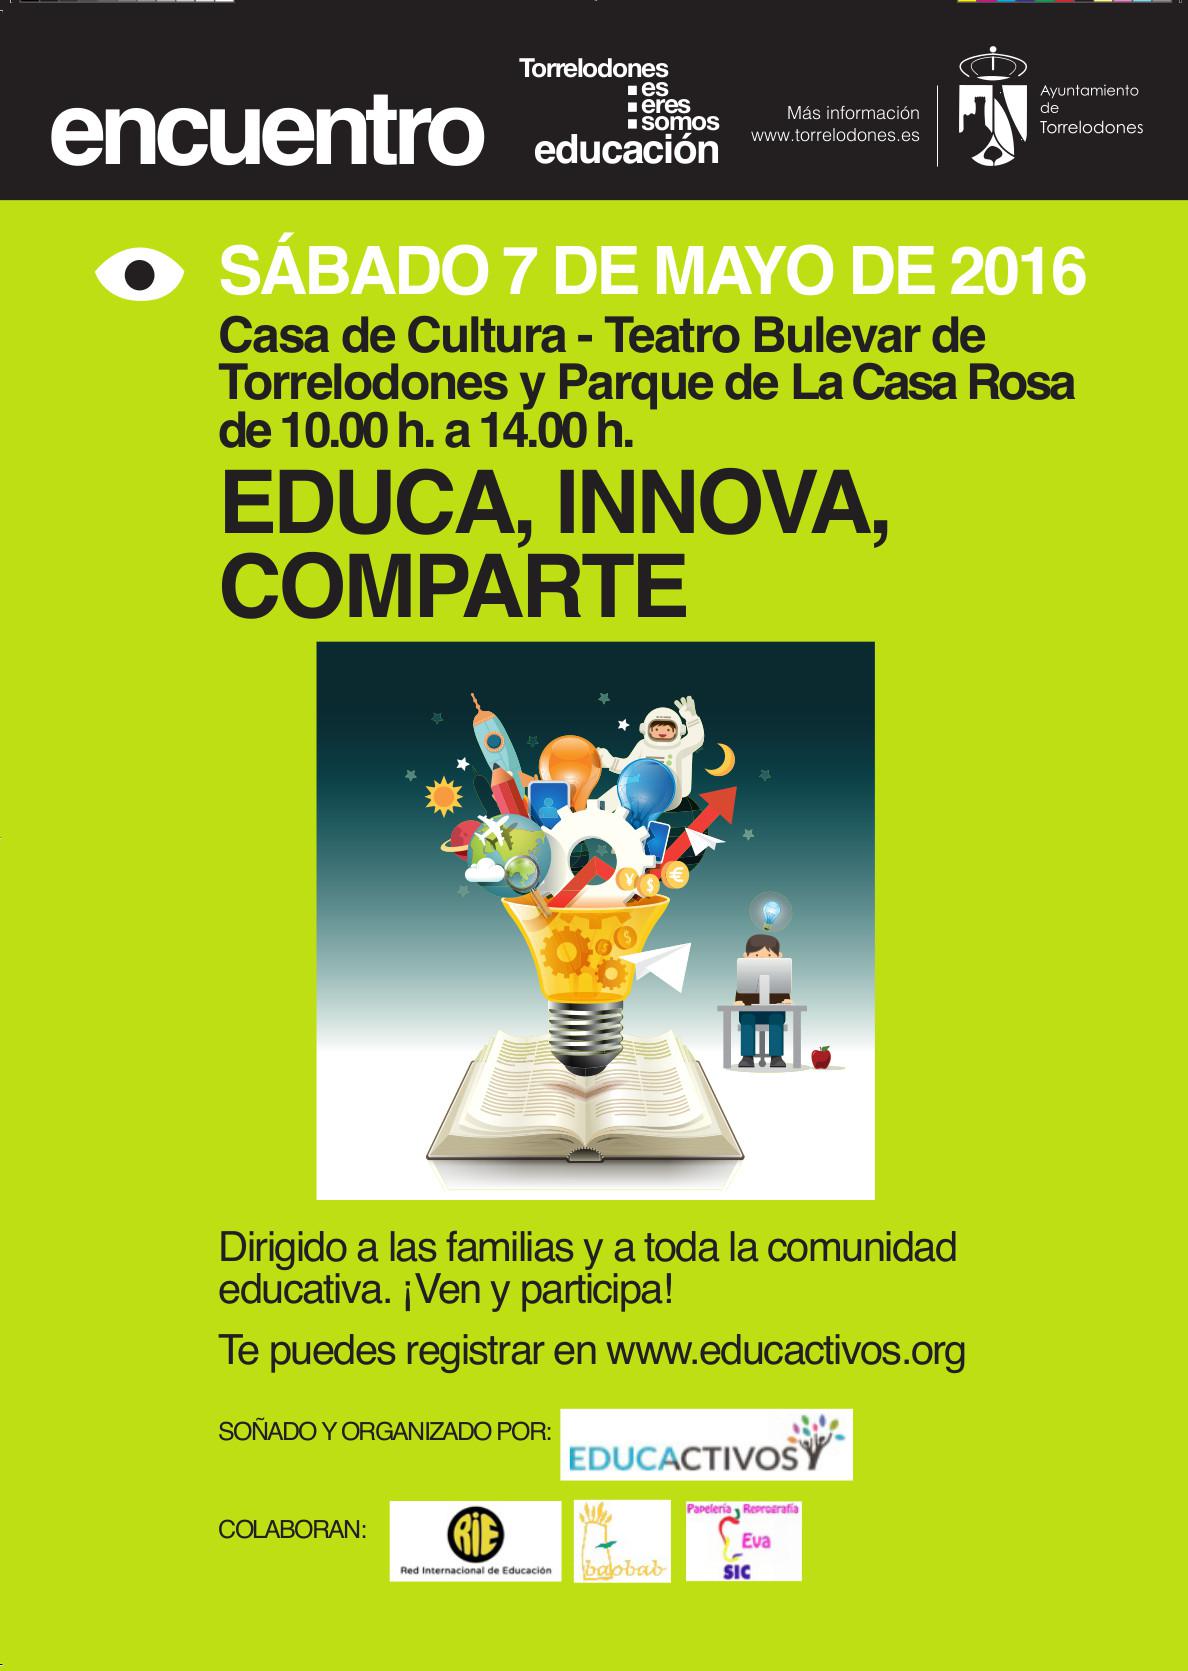 La Casa de Cultura de Torrelodones acogerá el encuentro educativo 'Educa, Innova, Comparte' el 7 de mayo